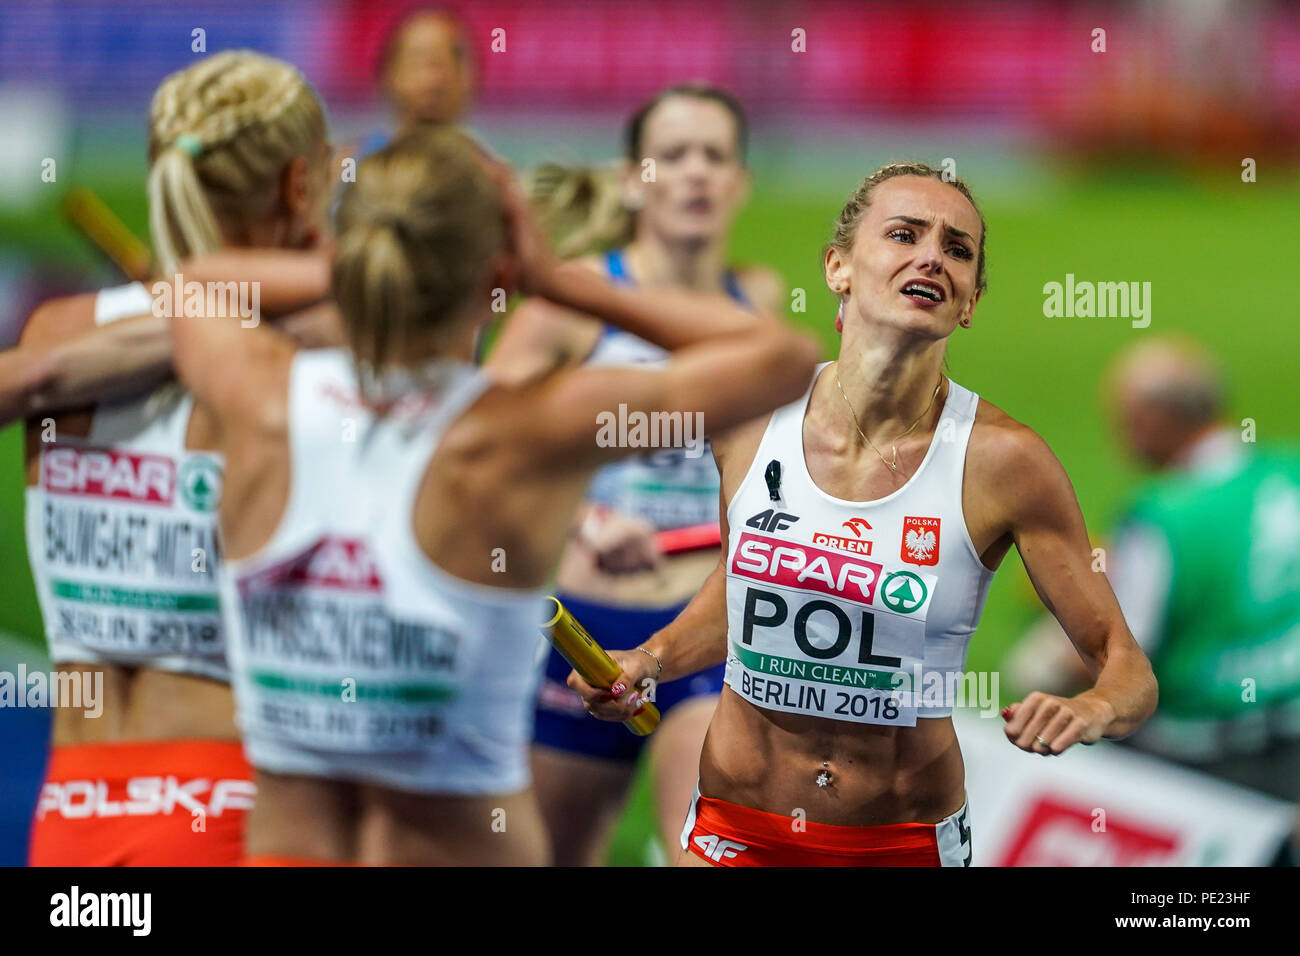 11 août 2018 Pologne : gagner 4 fois 400 mètres pour les femmes finale au Stade olympique à Berlin, à l'European Athletics Championship. Ulrik Pedersen/CSM Banque D'Images